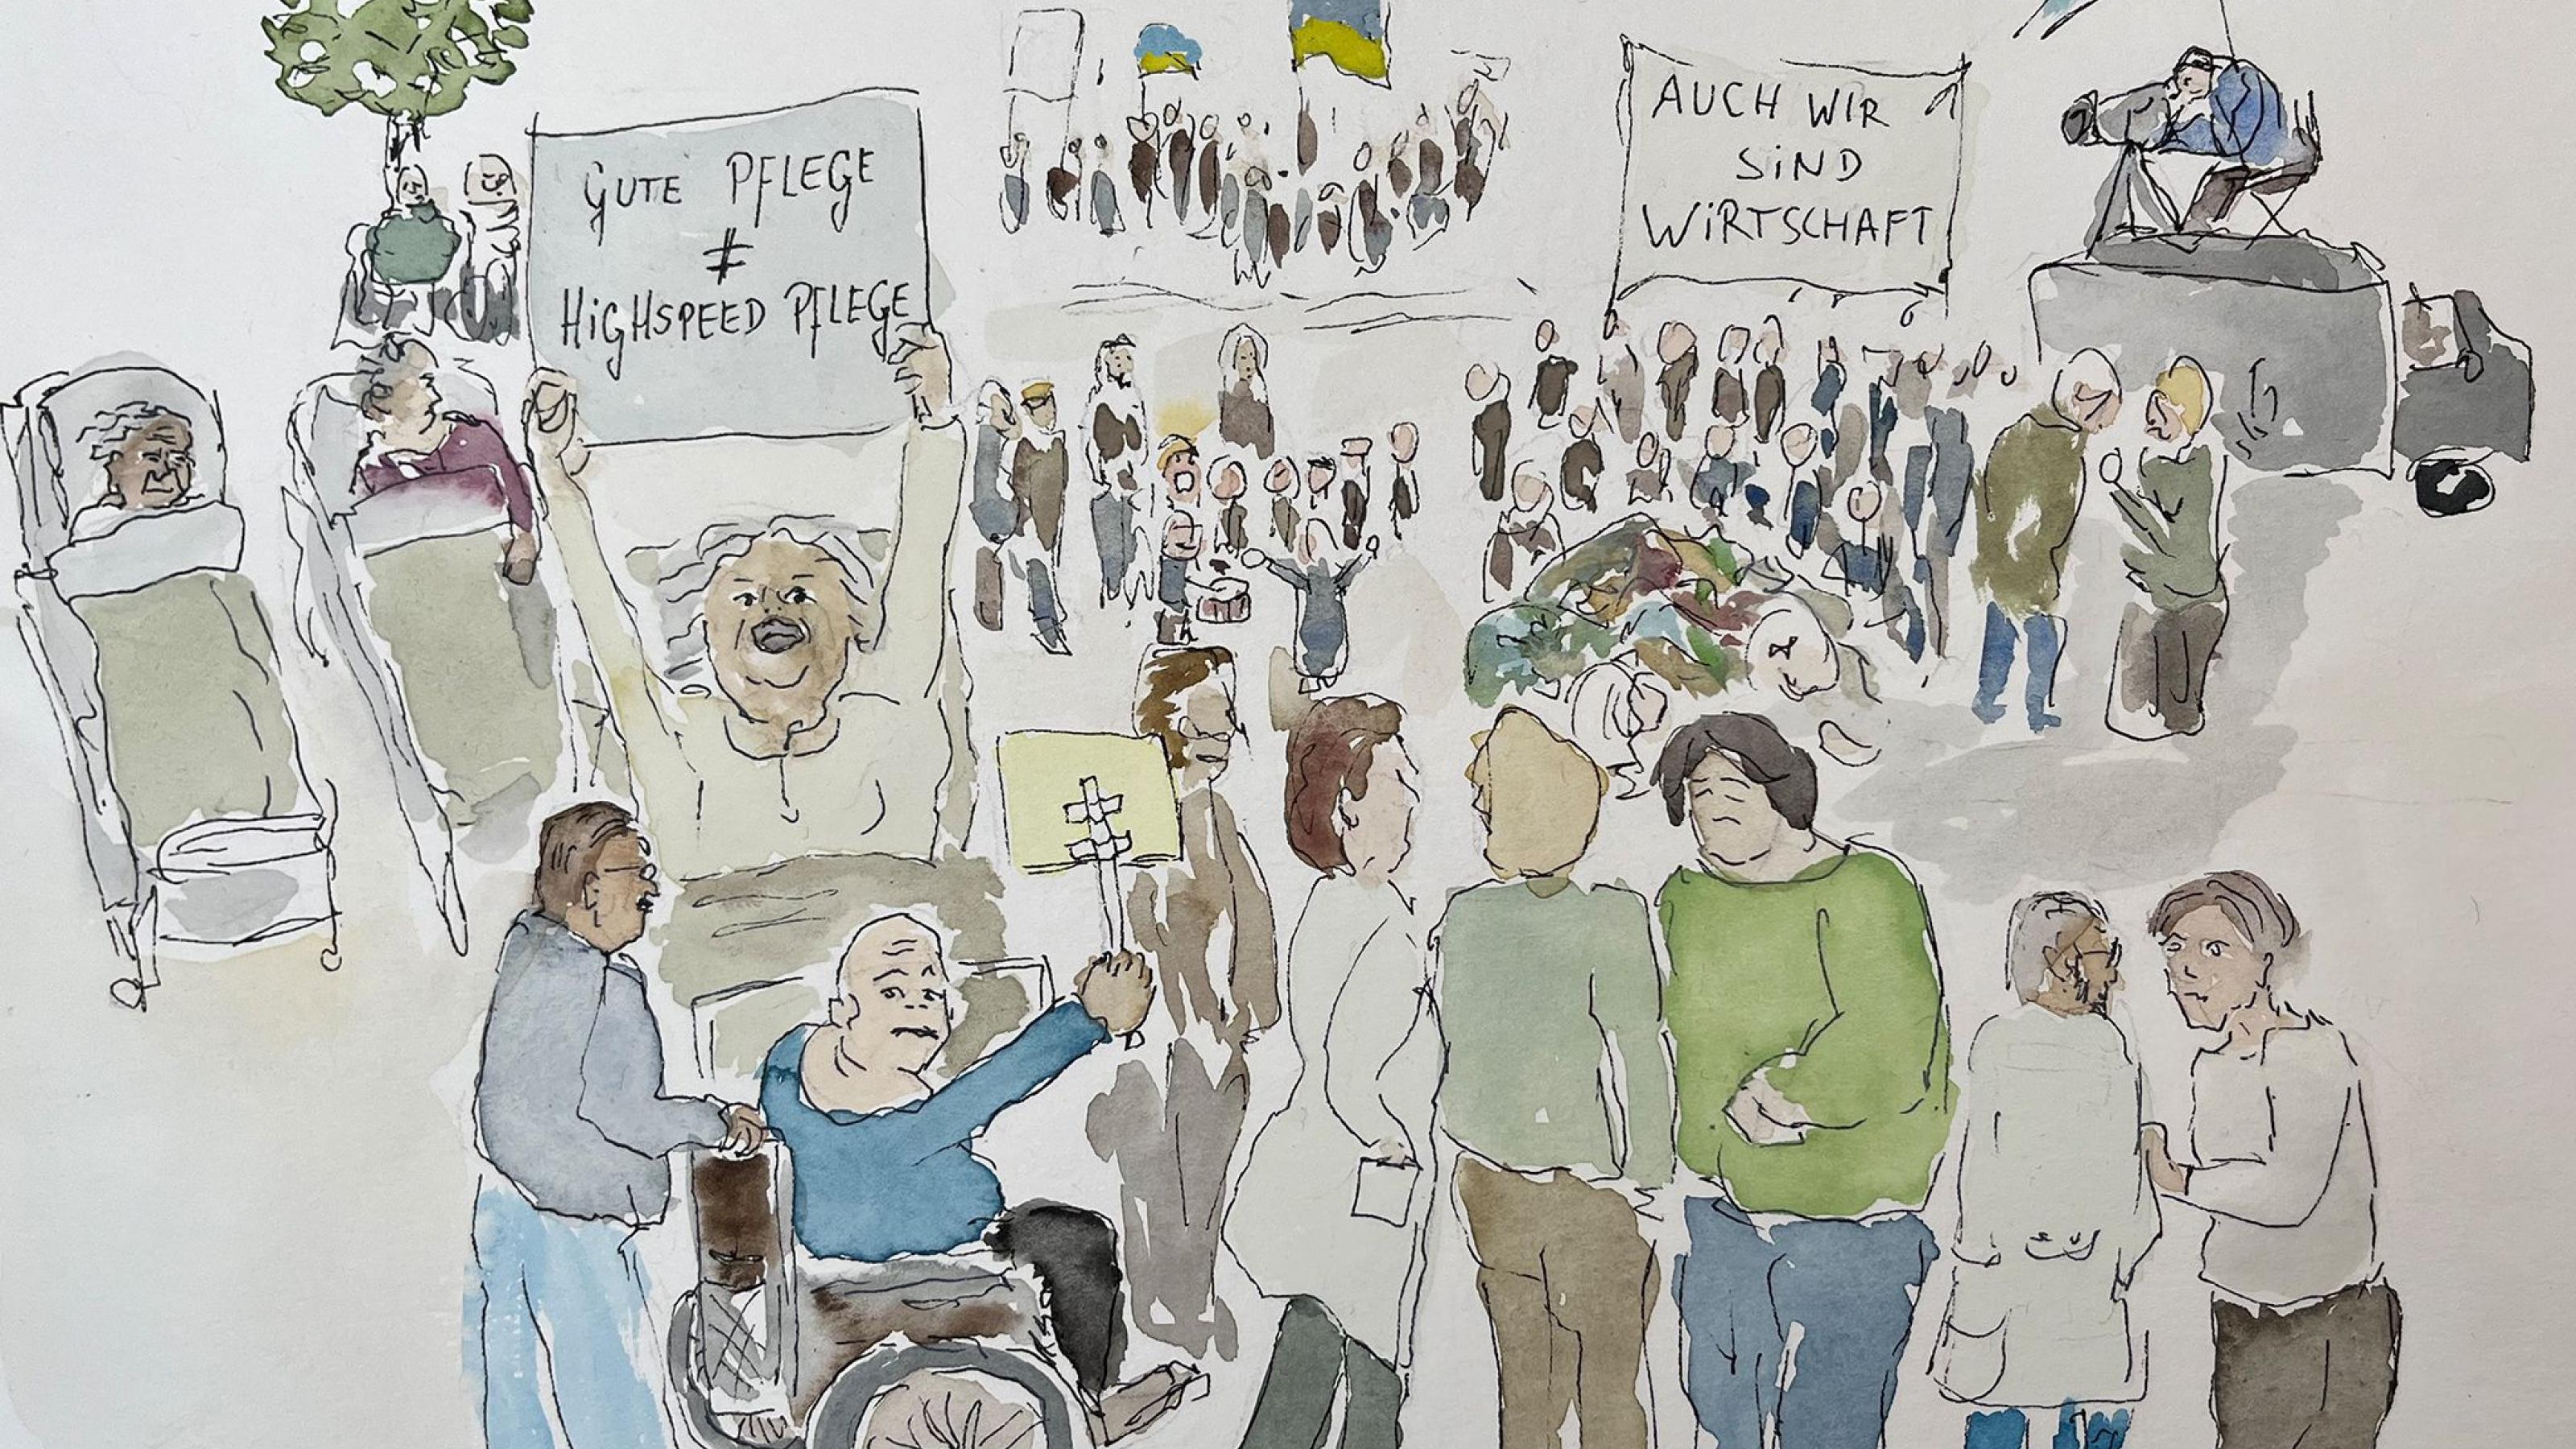 Die Grafik zeigt Menschen auf einer Demonstration zur Aufwertung sozialer Berufen. Es nehmen Menschen im Rollstuhl und in Krankenbetten teil, Kinder machen Musik, auf einem Banner steht „Auch wir sind Wirtschaft“.